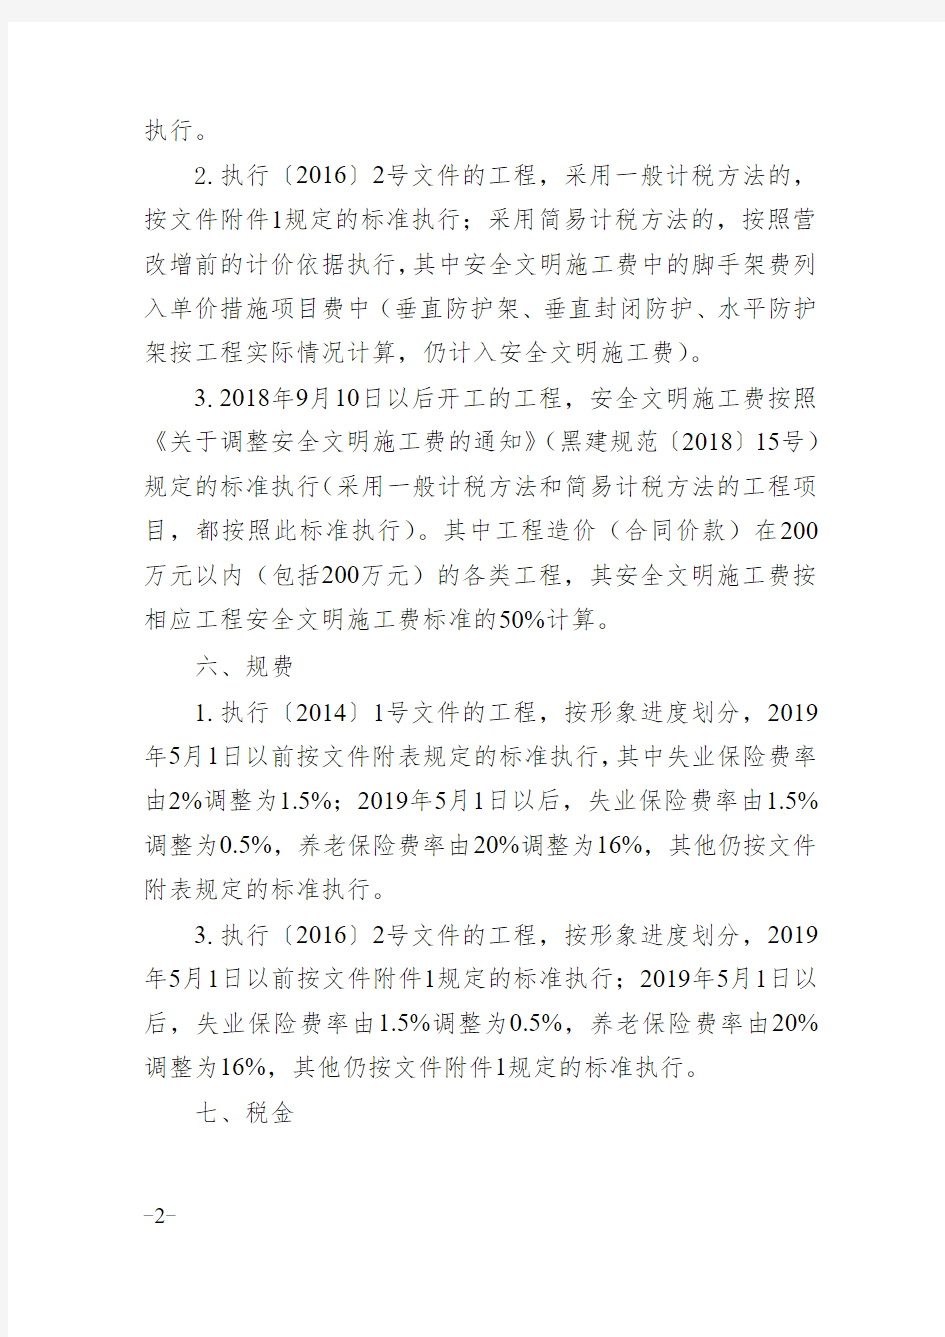 黑龙江省2019年建筑安装等工程结算指导意见